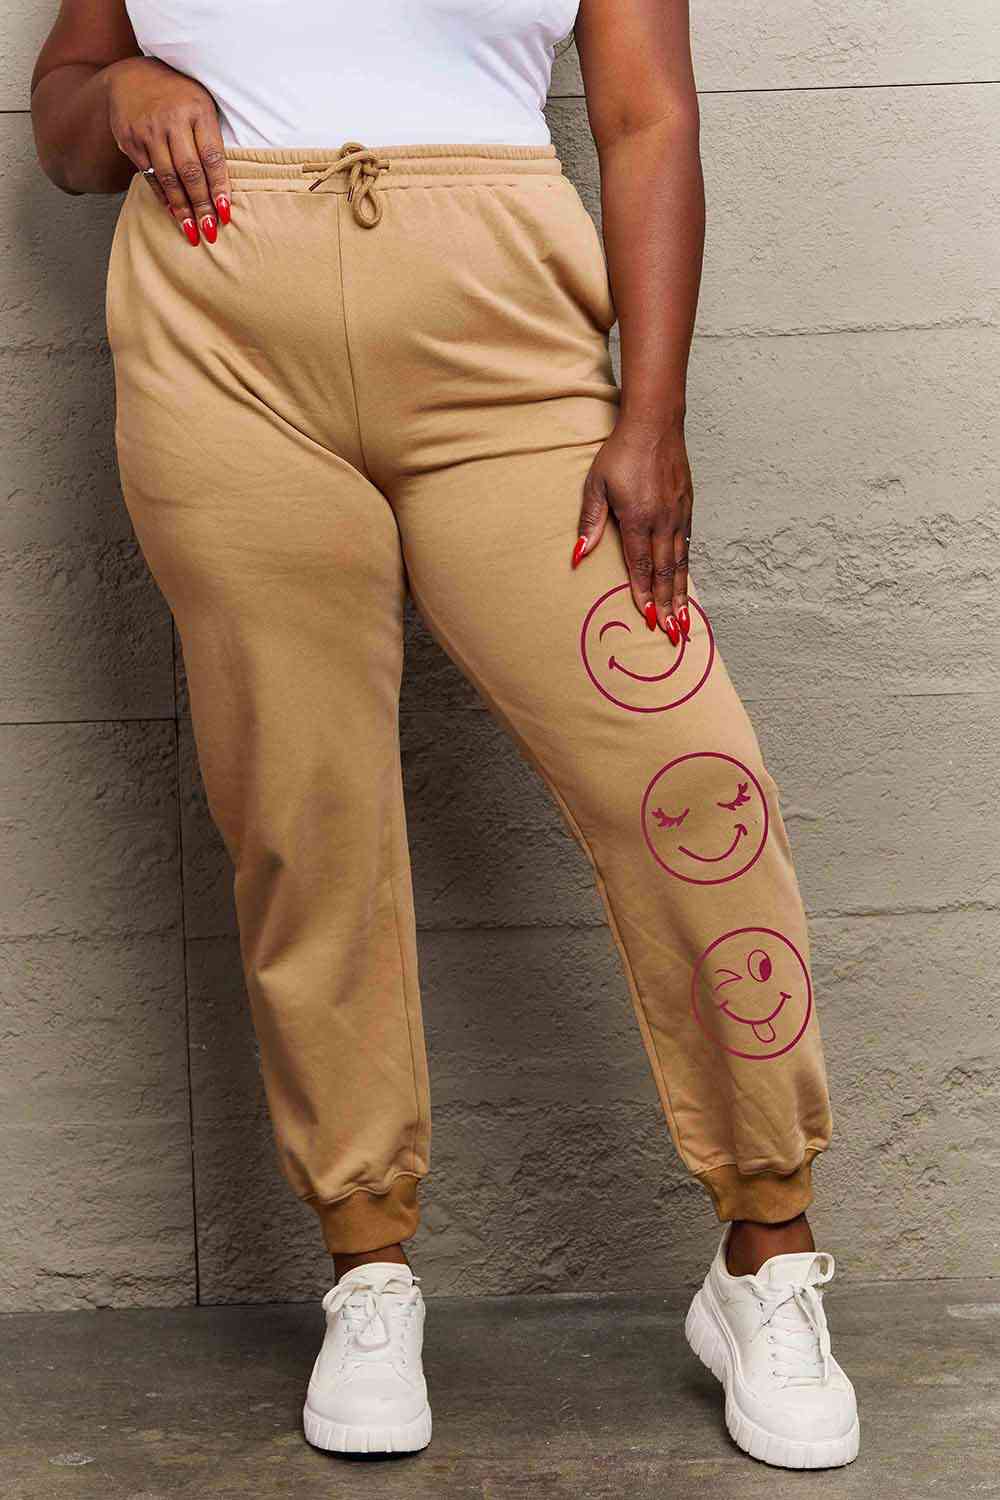 Pantalones deportivos con estampado de emoji de tamaño completo de Simply Love